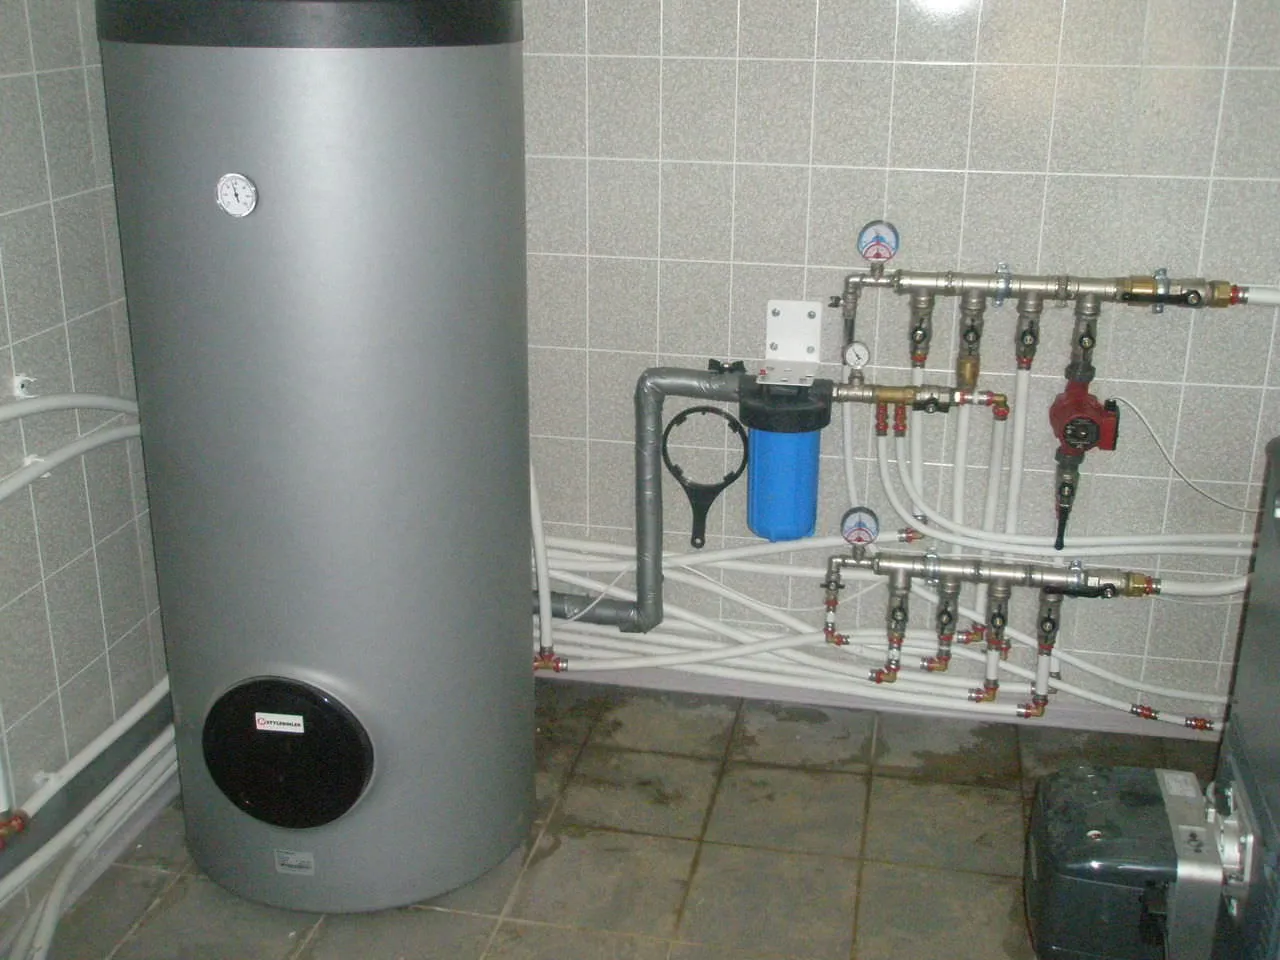 Подключение накопительного водонагревателя: советы специалистов и пошаговые инструкции